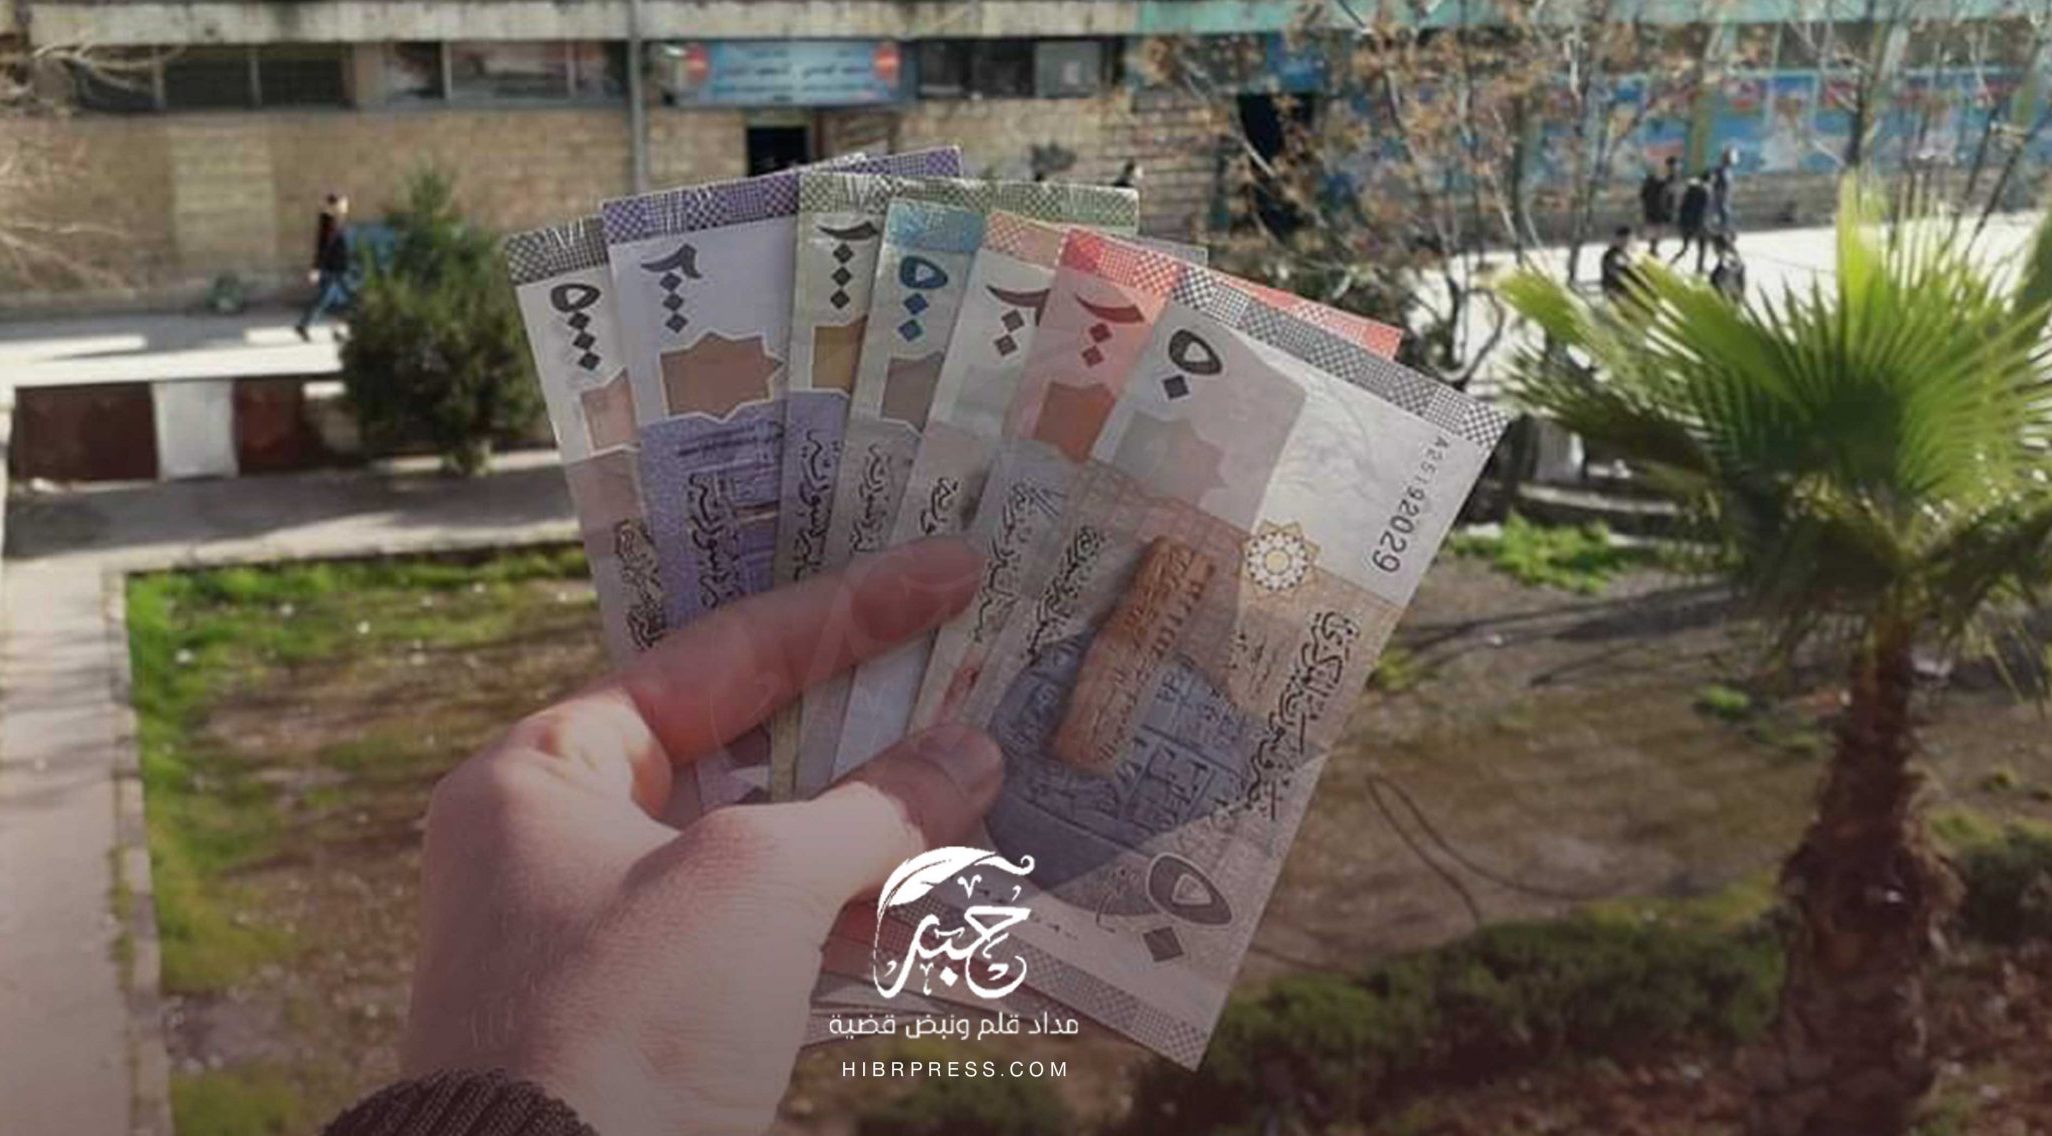 سجلت الليرة السورية الكثير من التغيرات في سعر صرفها أمام الدولار الأمريكي وسلة العملات الأجنبية خلال الساعات الأخيرة بين محافظة وأخرى.